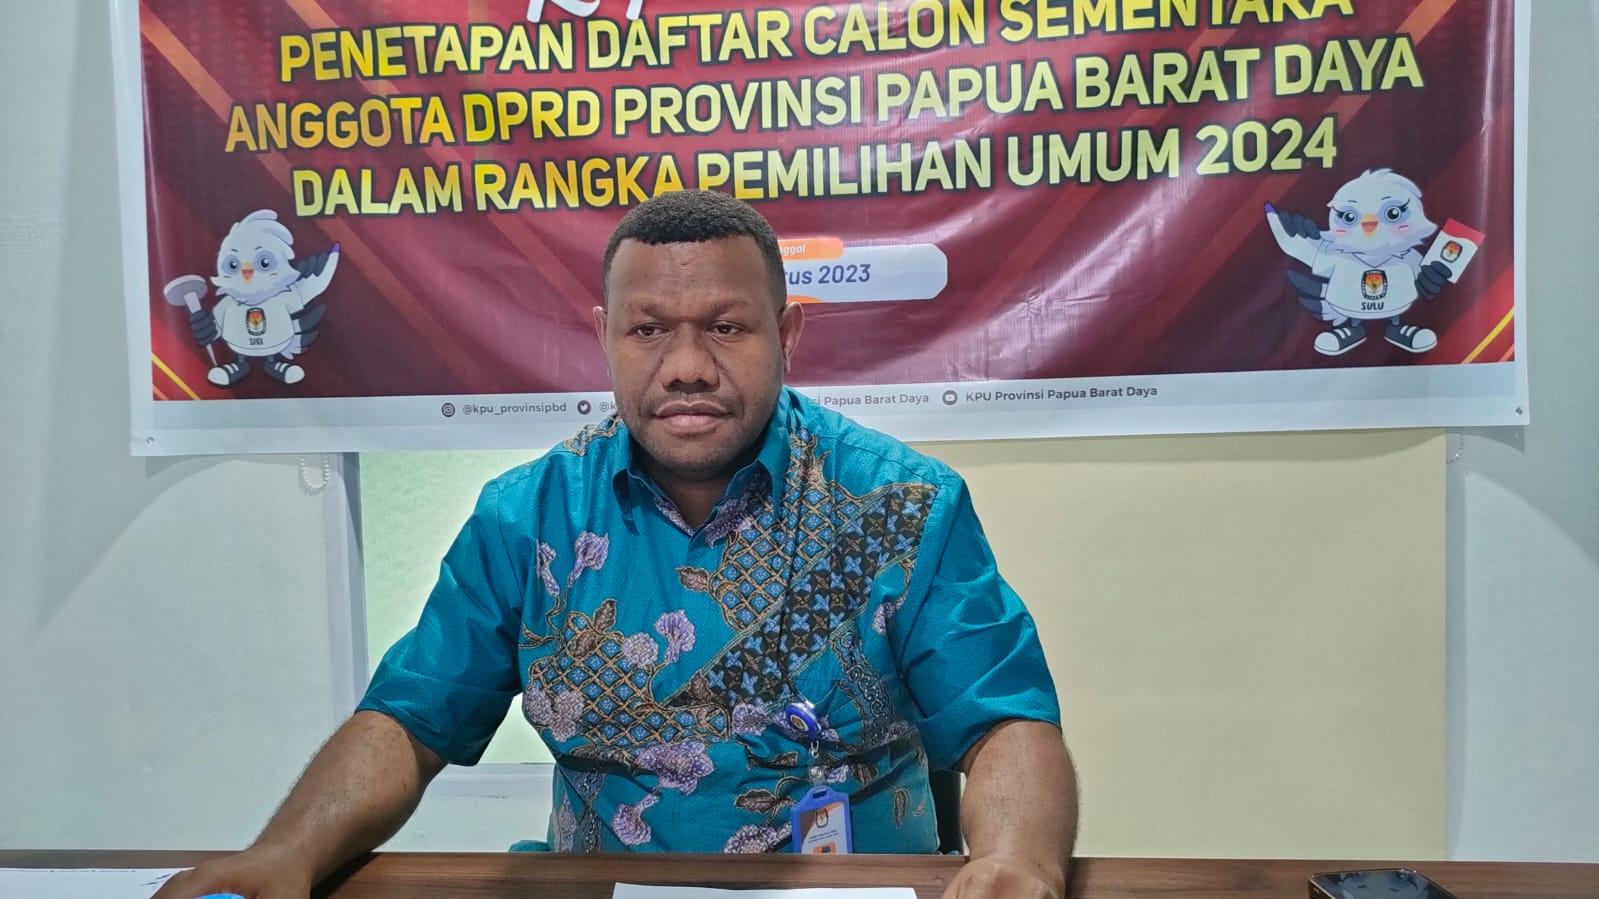 KPU Tetapkan Bacaleg Papua Barat Daya, Masyarakat Diminta Aktif Berikan Tanggapan